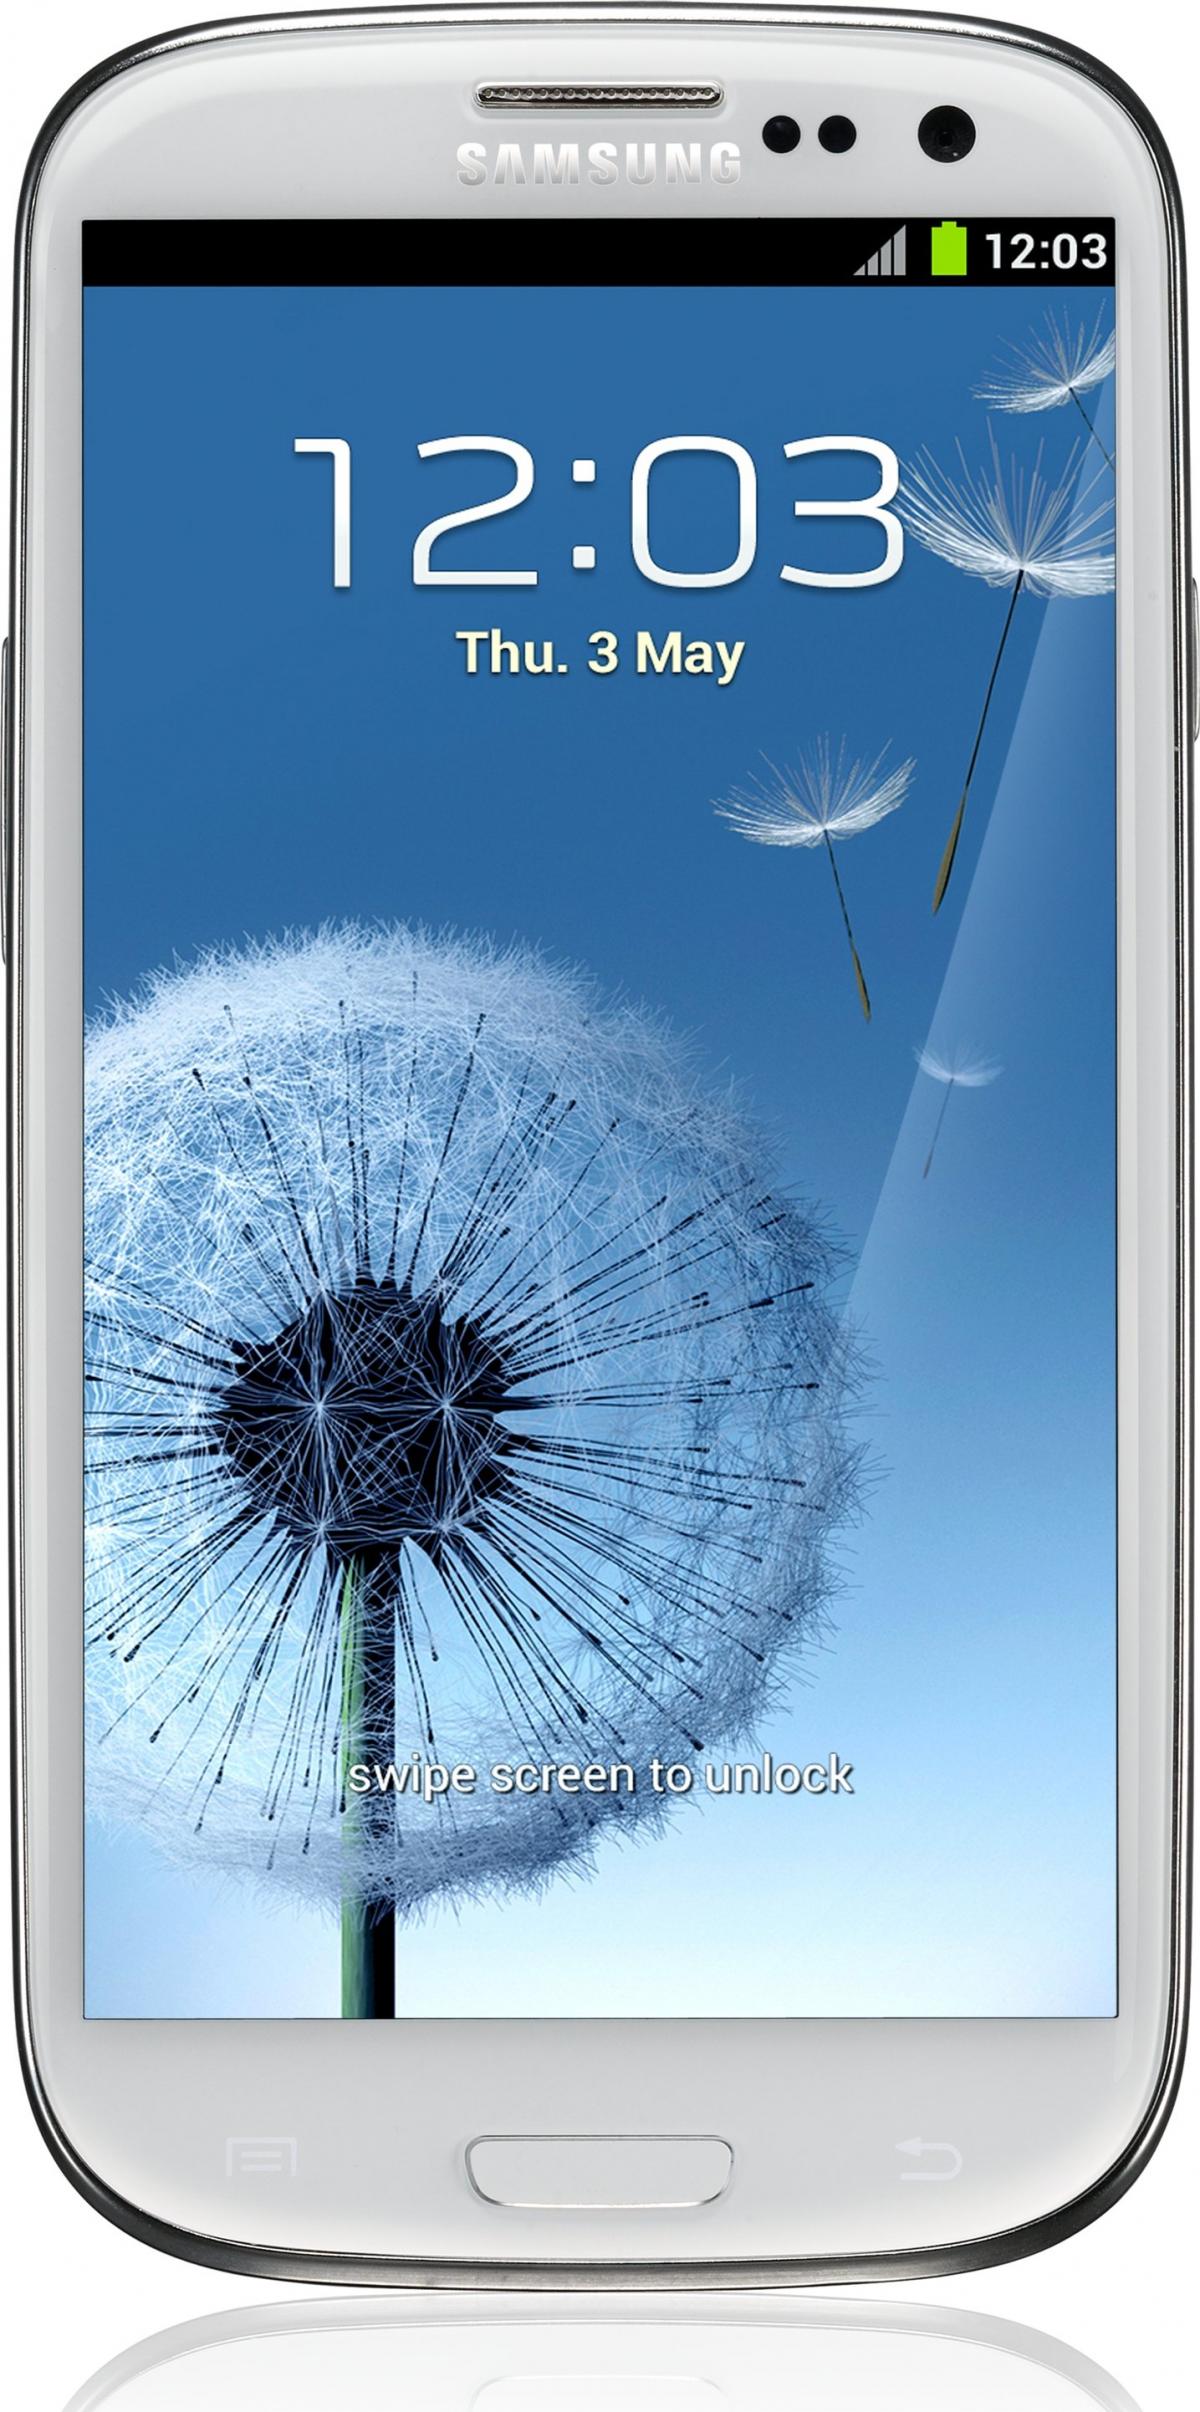 Galaxy S 3 (International) GT-I9300